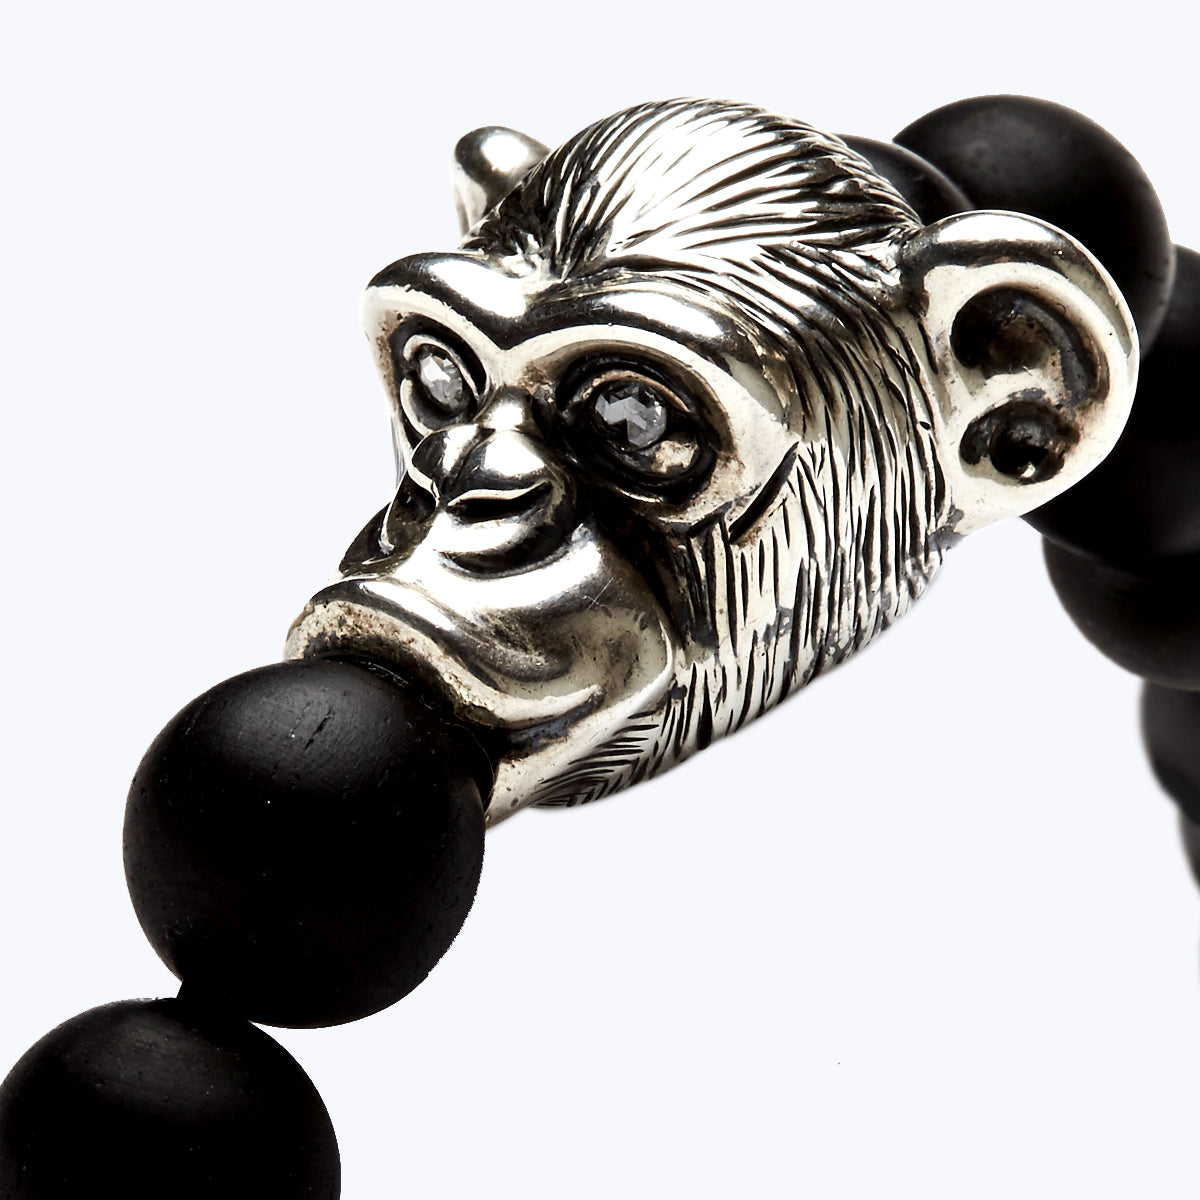 Chinese Zodiac Ebony Bead Bracelet - Year of the Monkey